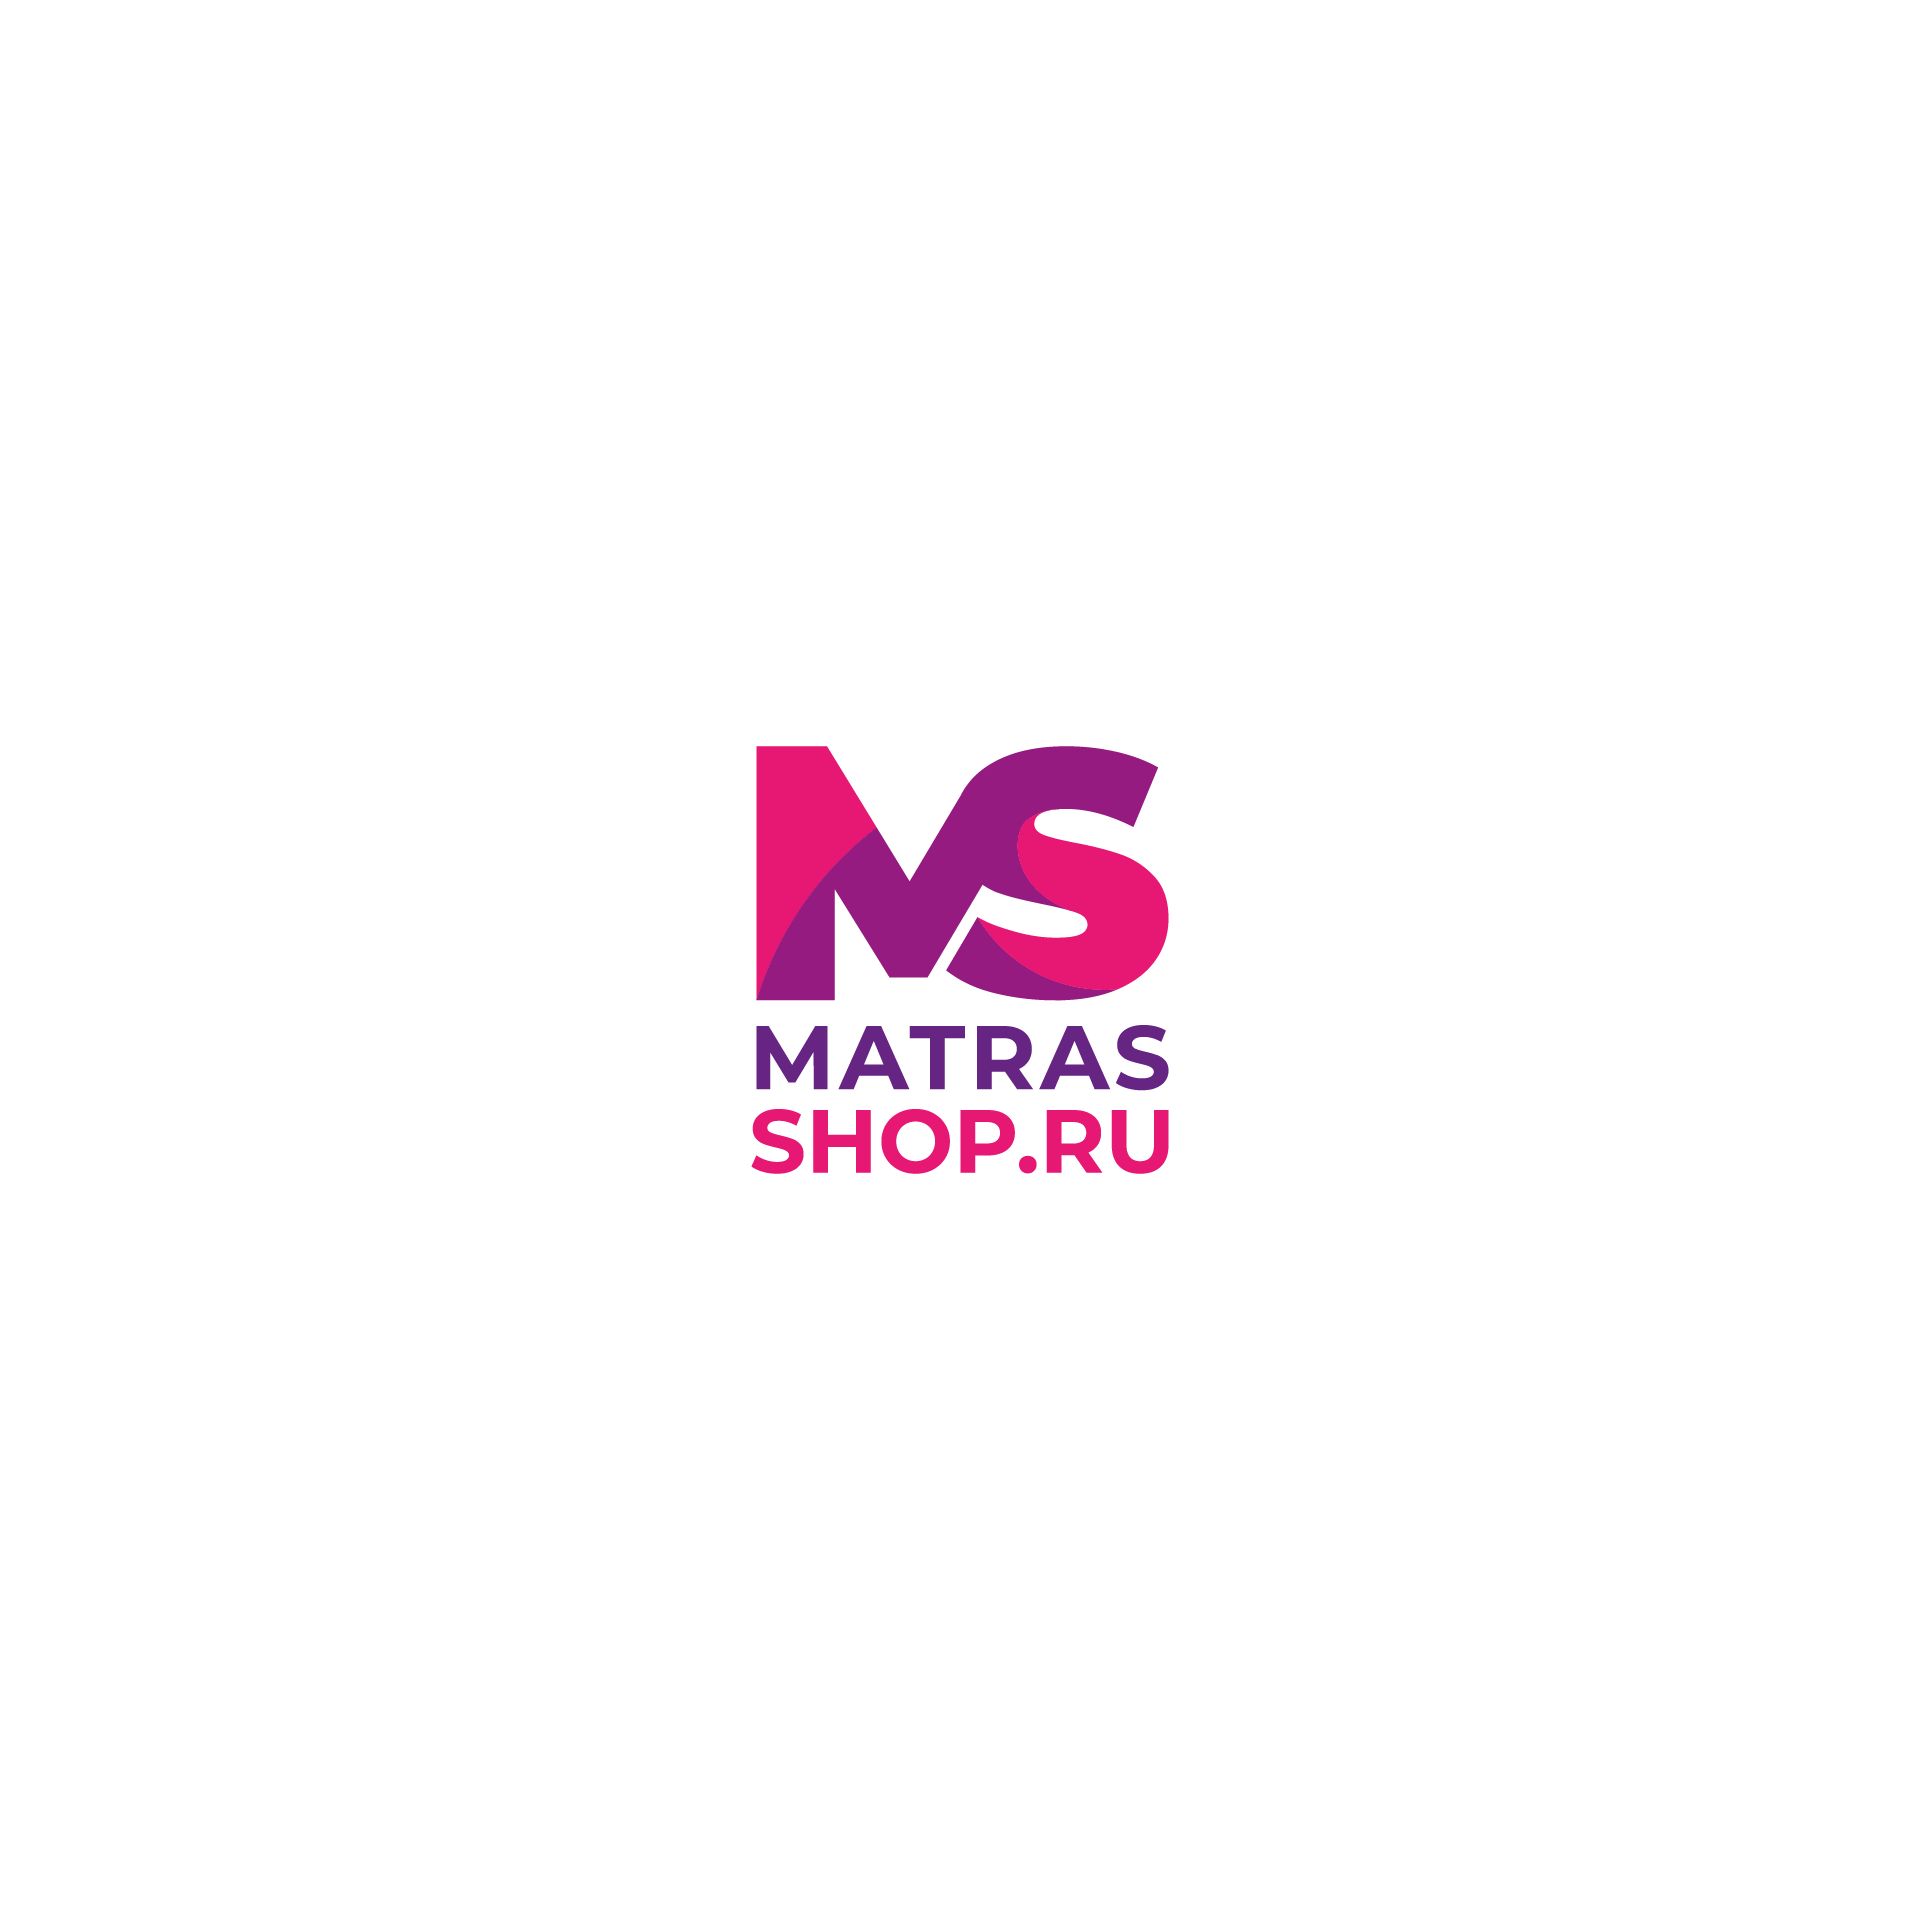 Логотип для Логотип для сети магазинов MATRASSHOP.RU - дизайнер alpine-gold